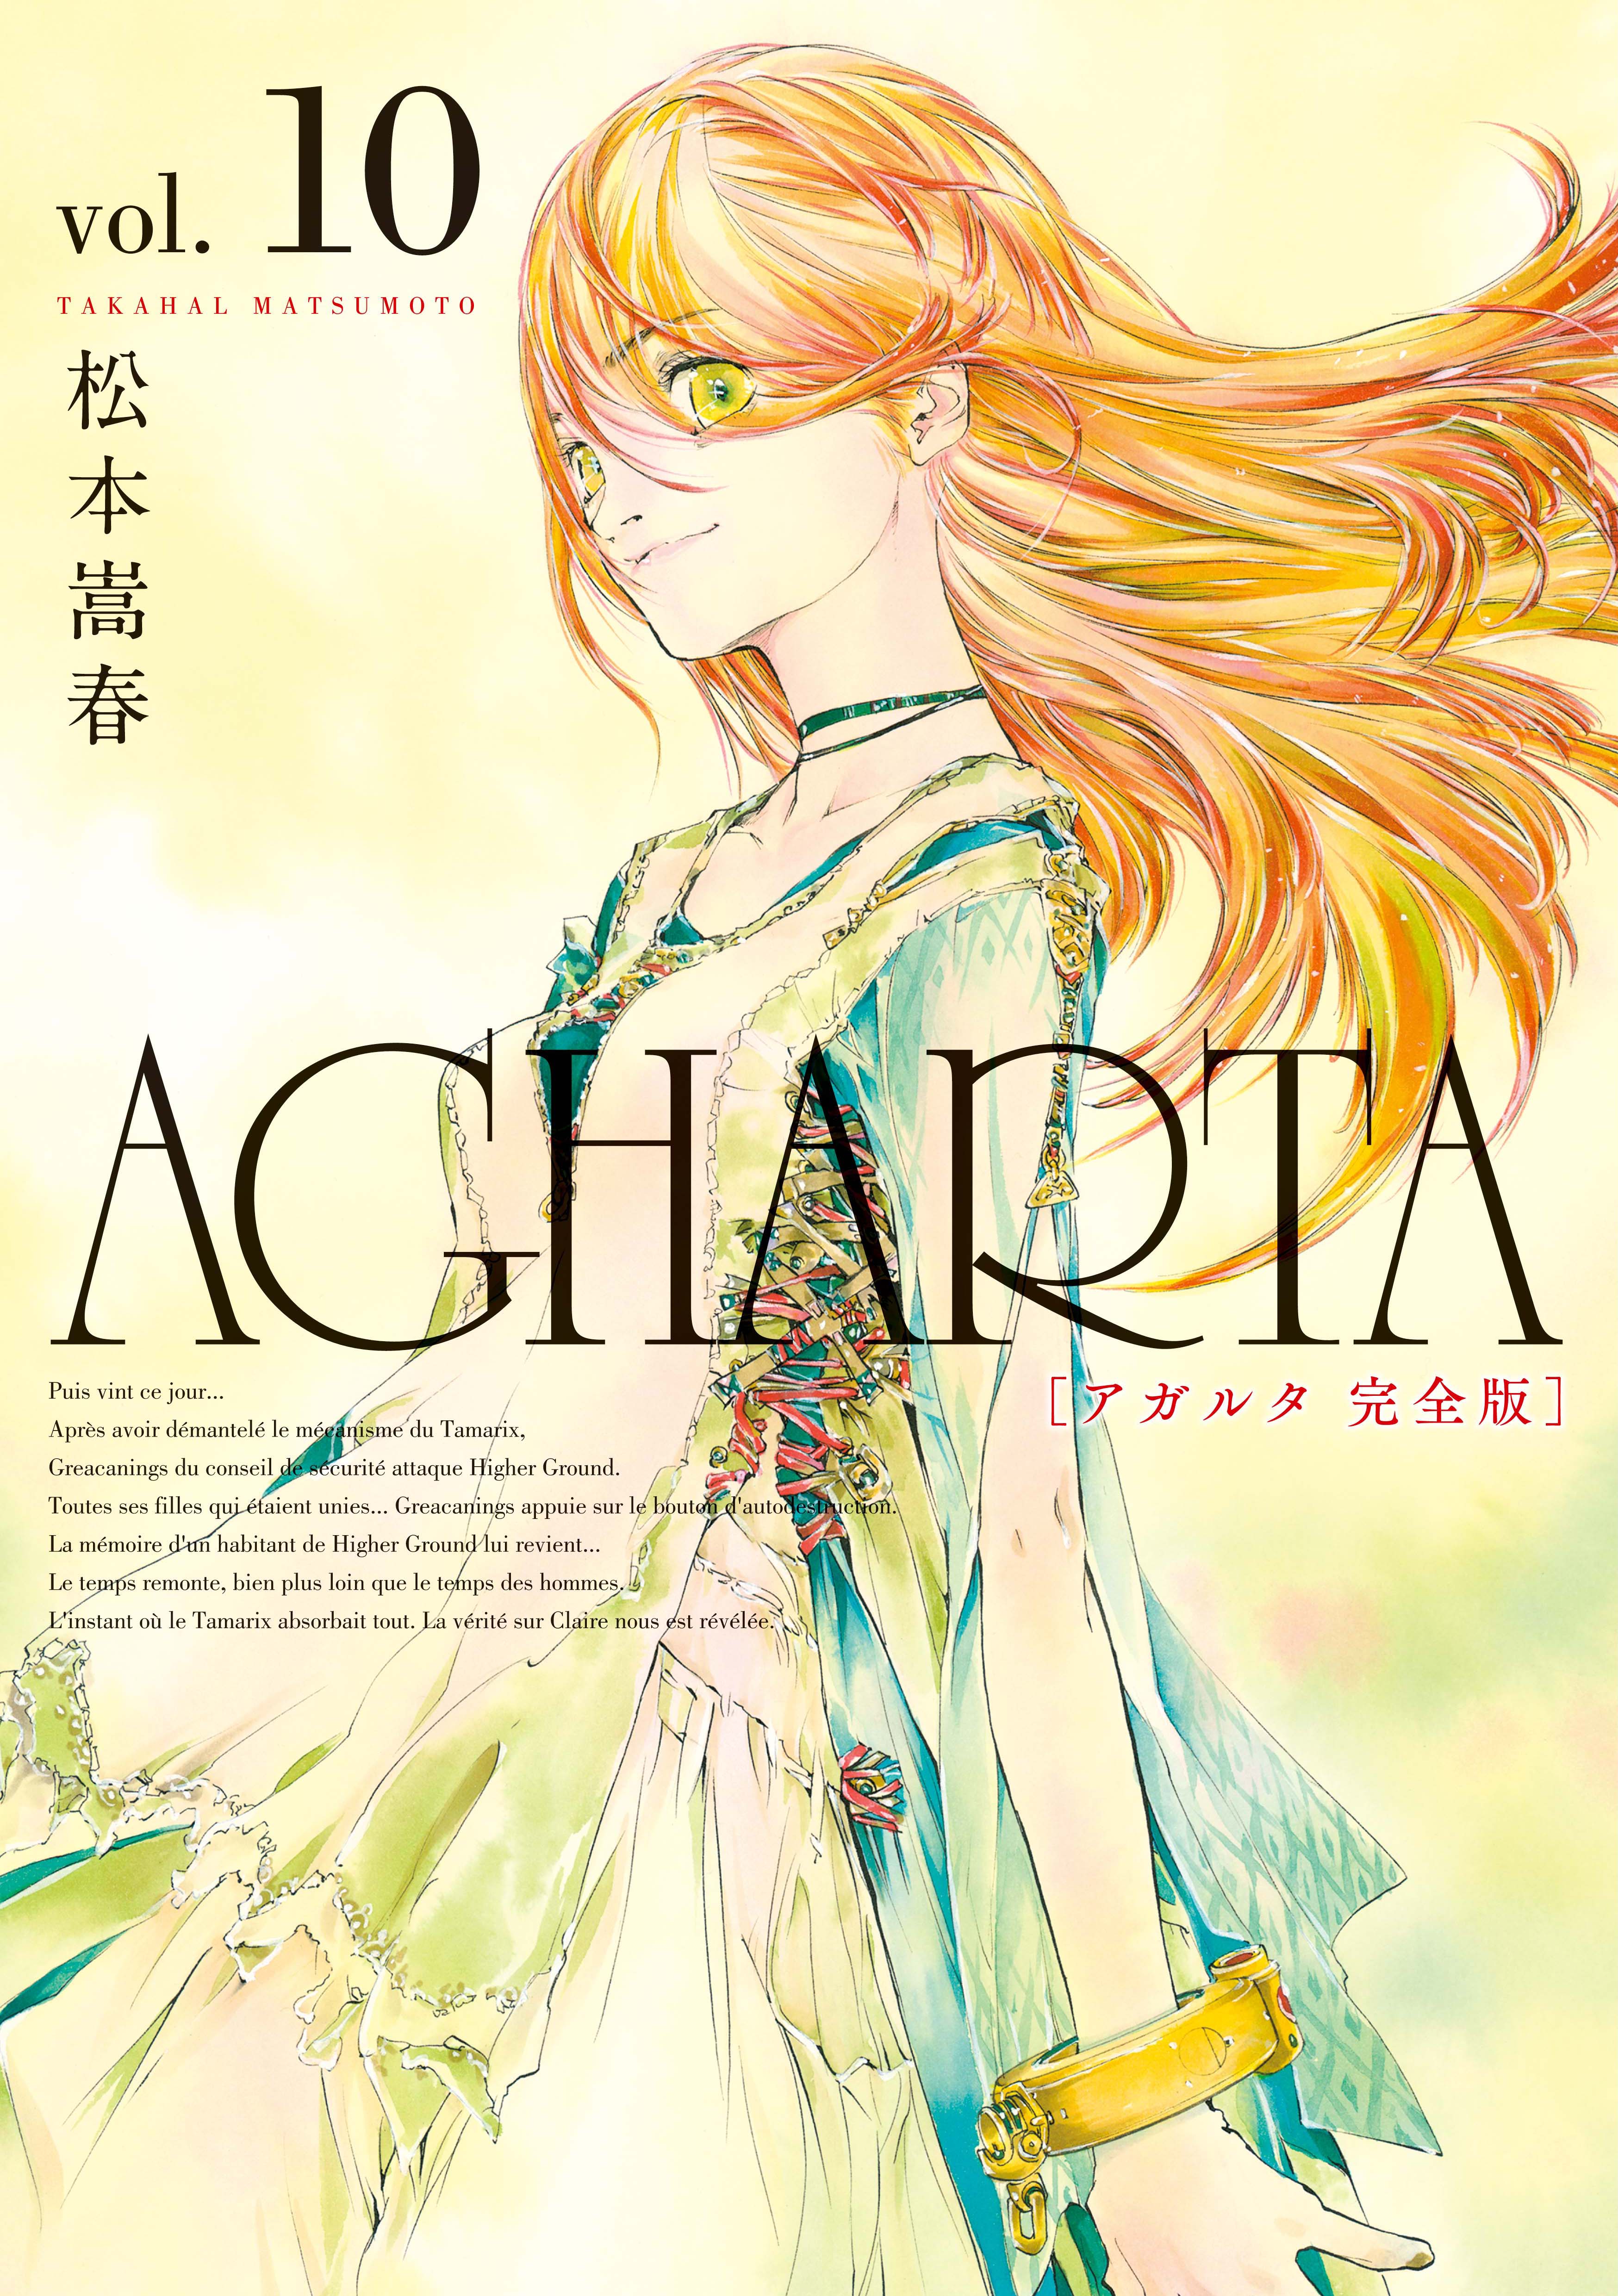 AGHARTA - アガルタ - 【完全版】 10巻 - 松本嵩春 - 青年マンガ・無料 